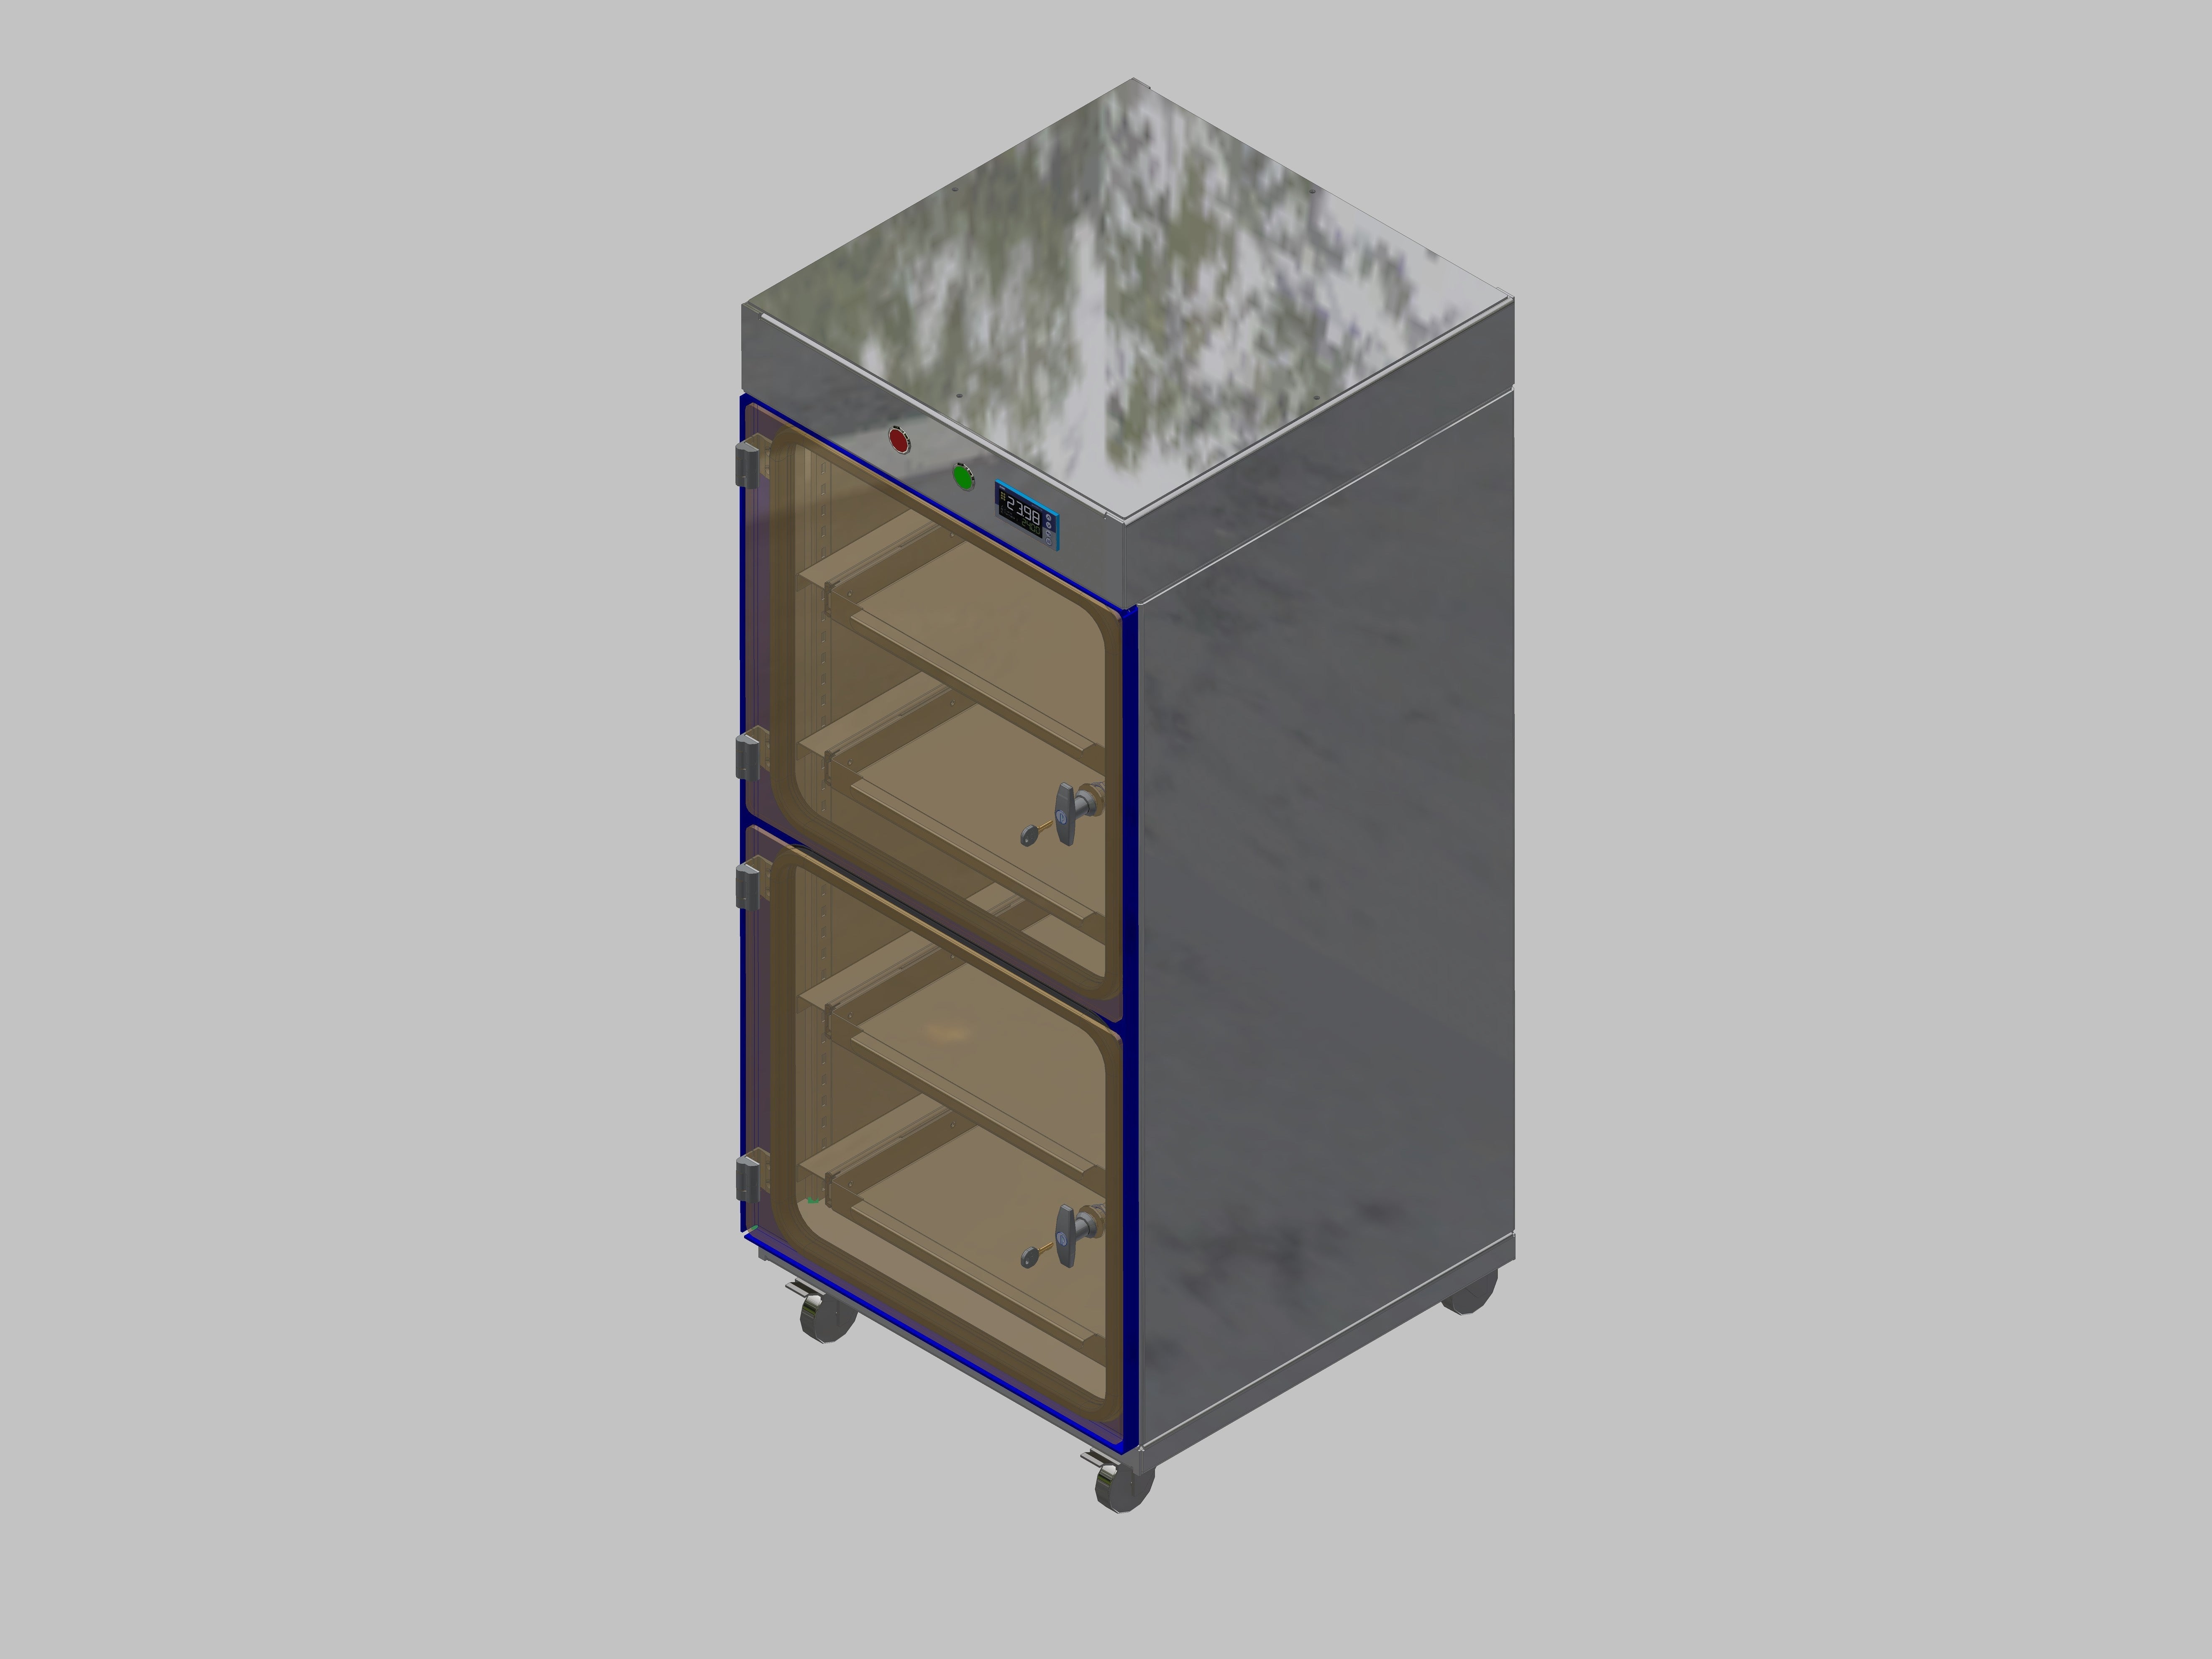 Trockenlagerschrank-ITN-600-2 mit 2 Schubladen pro Kompartiment  und Sockelauführung mit Rollen